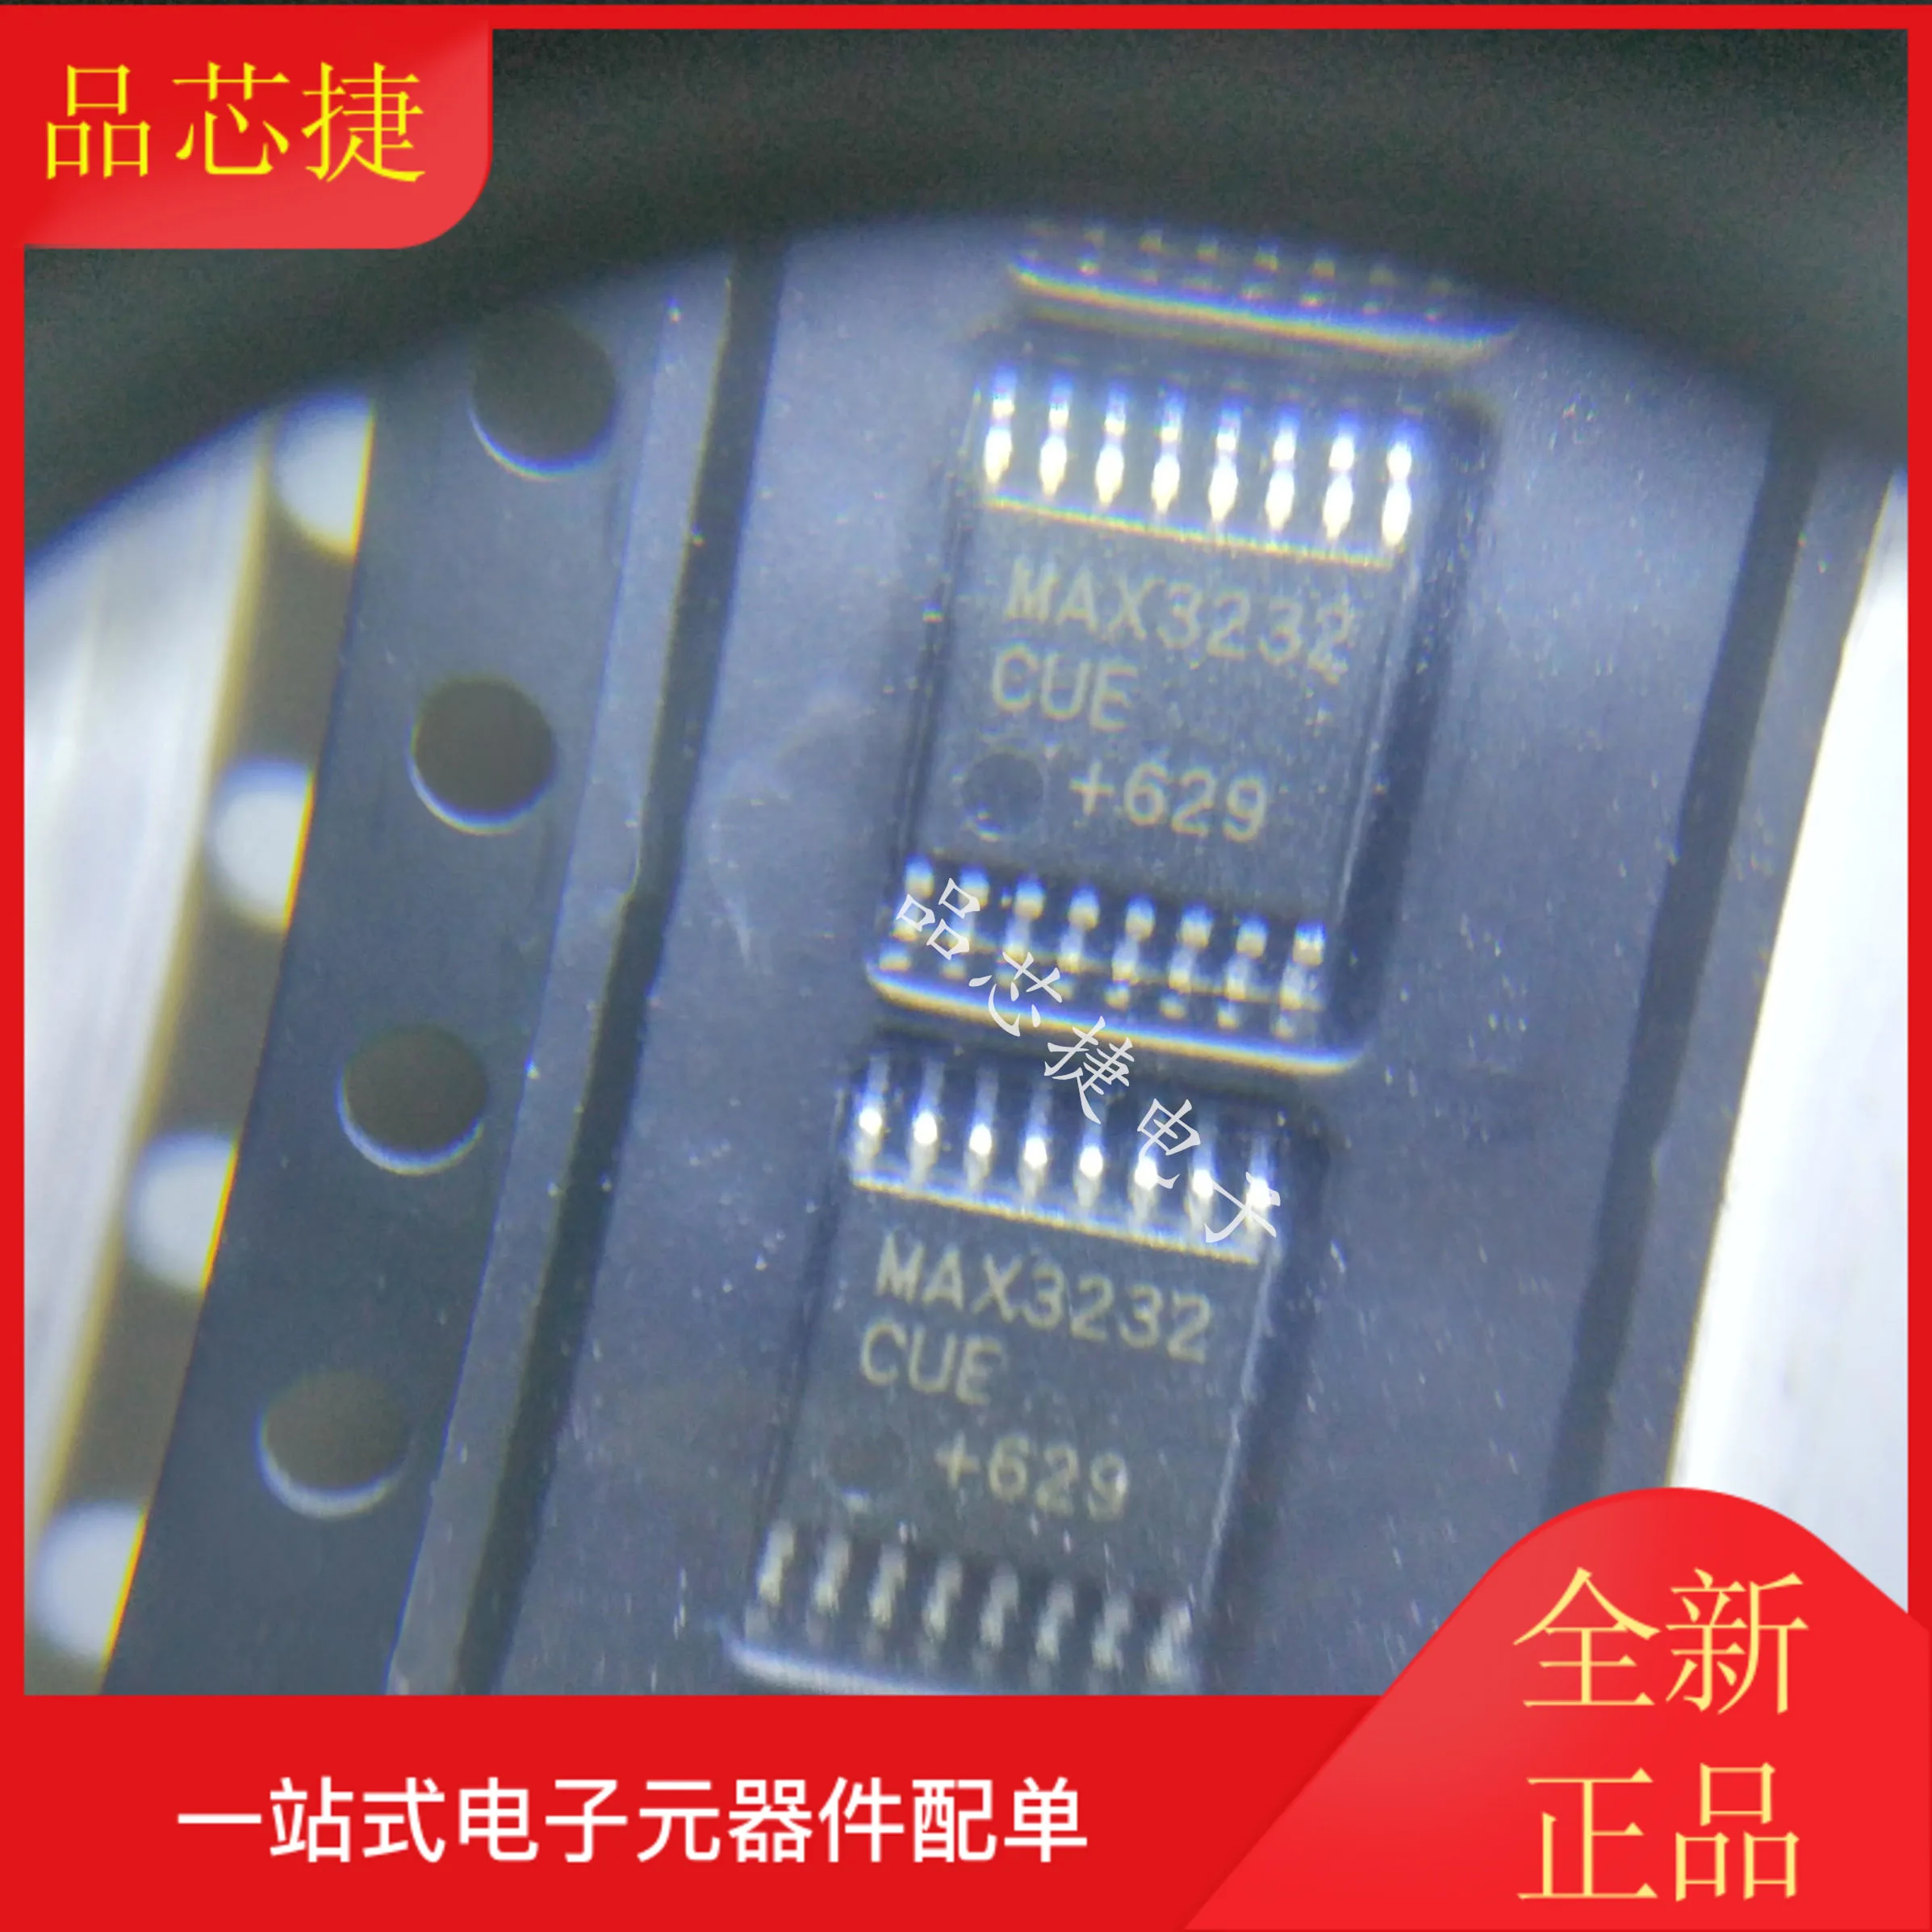 

10 шт. Оригинальный Новый MAX3232CUE MAX3232 TSSOP16 RS232 трансивер IC chip